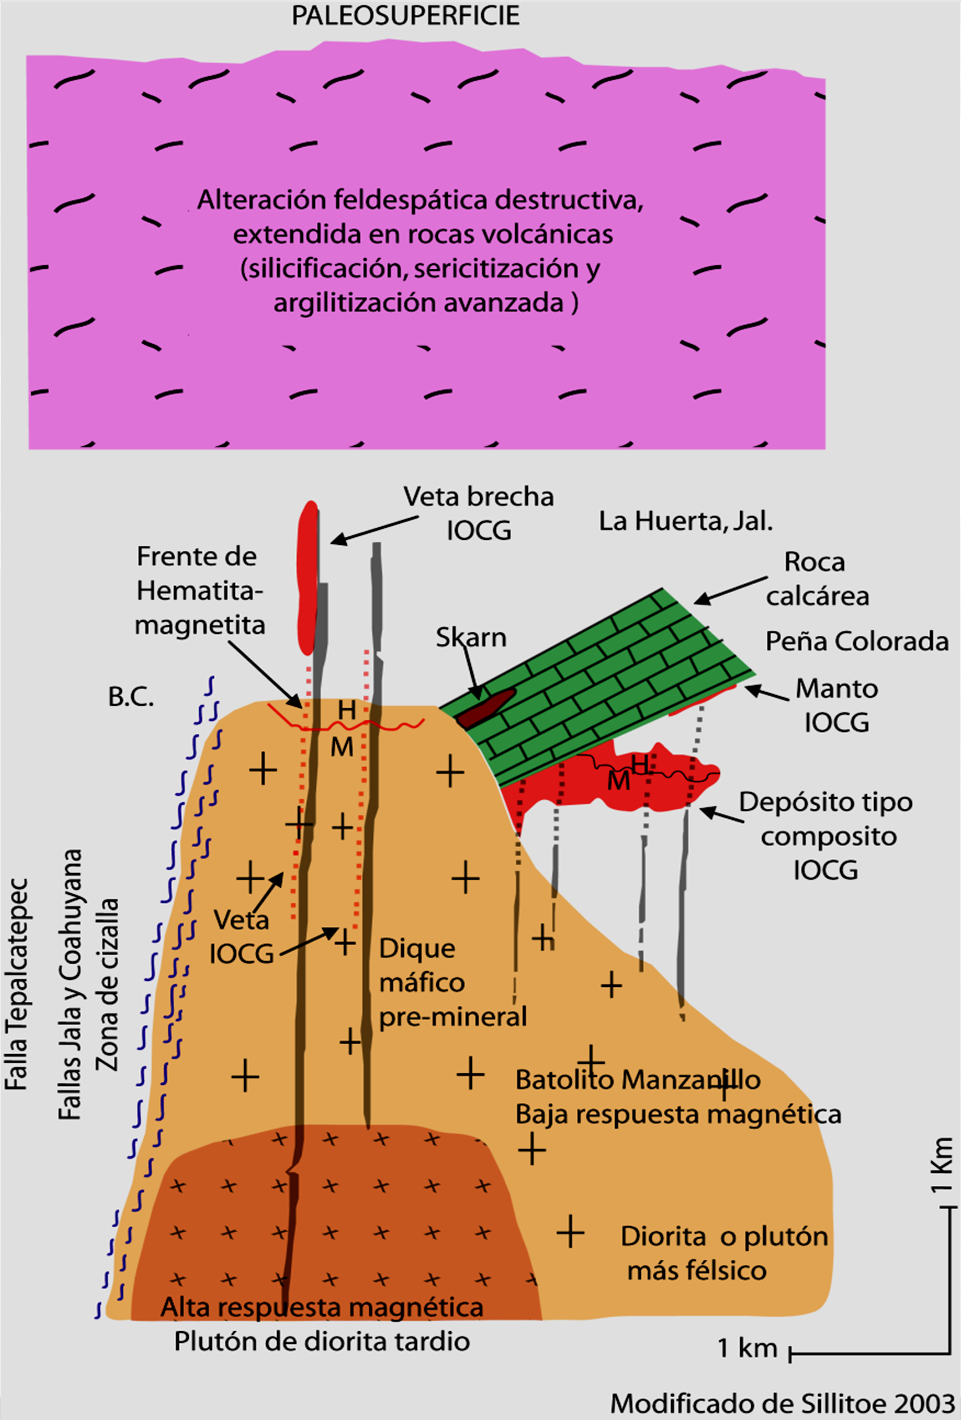 Modelo geológico- geofísico de exploración Sierra del Alo y Sierra de Piscila Fallas de cizallamiento con diques básicos preminerales y el emplazamiento de rocas intrusivas (2 eventos).